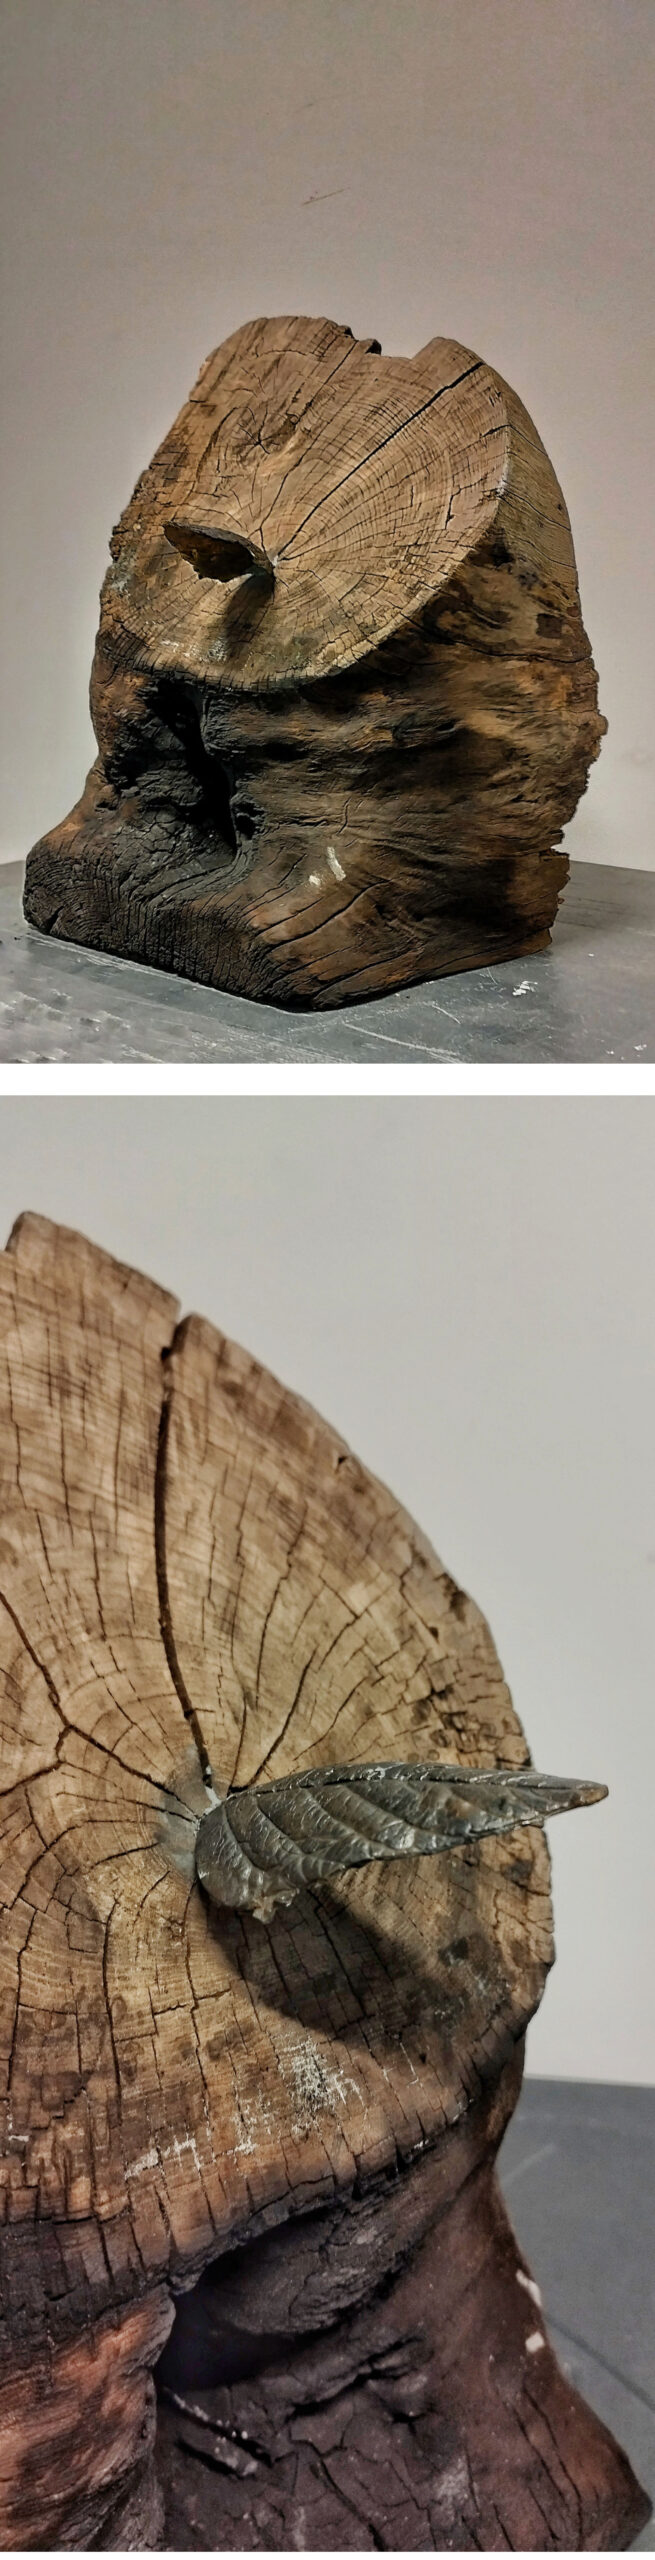 dwa zdjęcia jedno pod drugim, przedstawiające fragment okorowanego, pomarszczonego i w części rozdwojonego pnia drzewa z drugim końcem ściętym ukośnie. W ukośnej płaszczyźnie znajduje się szereg spękań, z dominantą w jej centrum, gdzie został umieszczony, odlany z wosku i pomalowany jak spatynowany na metal, listek. Pierwsze zdjęcie - cała praca stojącej na szarej podłodze na tle białej ściany - widok ¾, drugie  - detal: listek umieszczony w skośnej płaszczyznie, widok z drugiej strony.